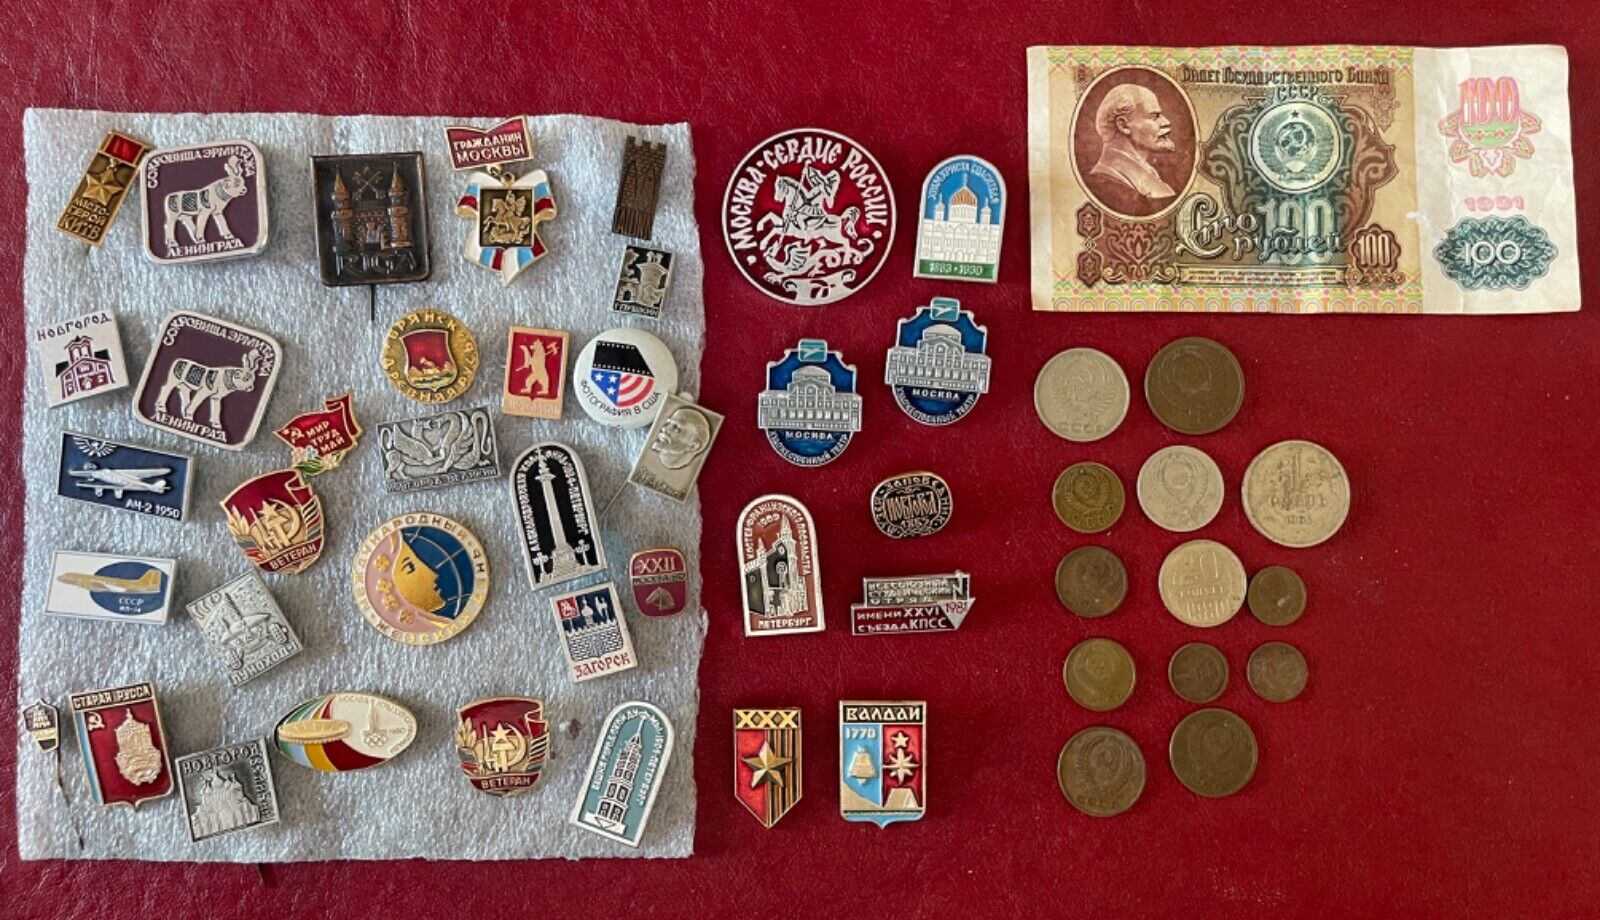 Soviet pins, Soviet kopek pieces, Soviet ruble note. A bunch of Soviet stuff.